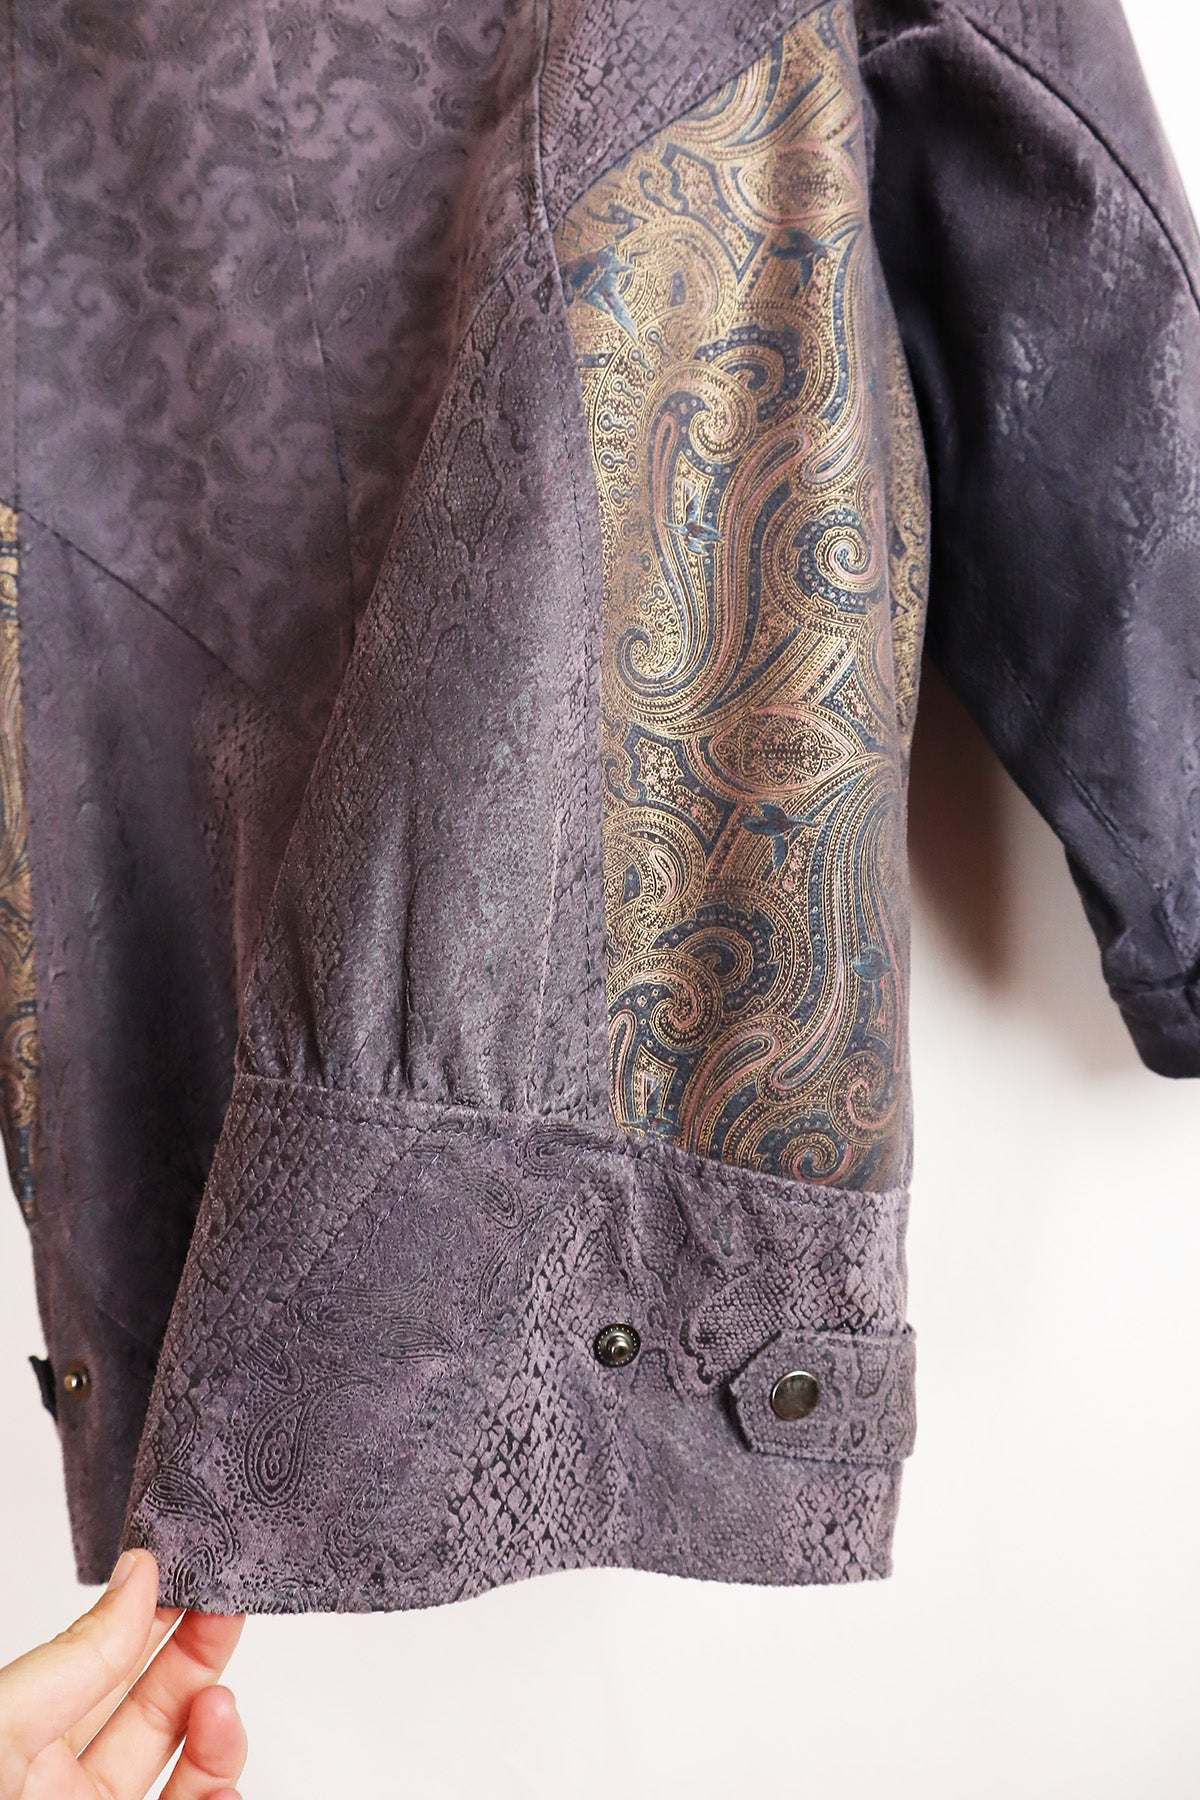 Leder Jacke Vintage Patchwork ( Gr. L )